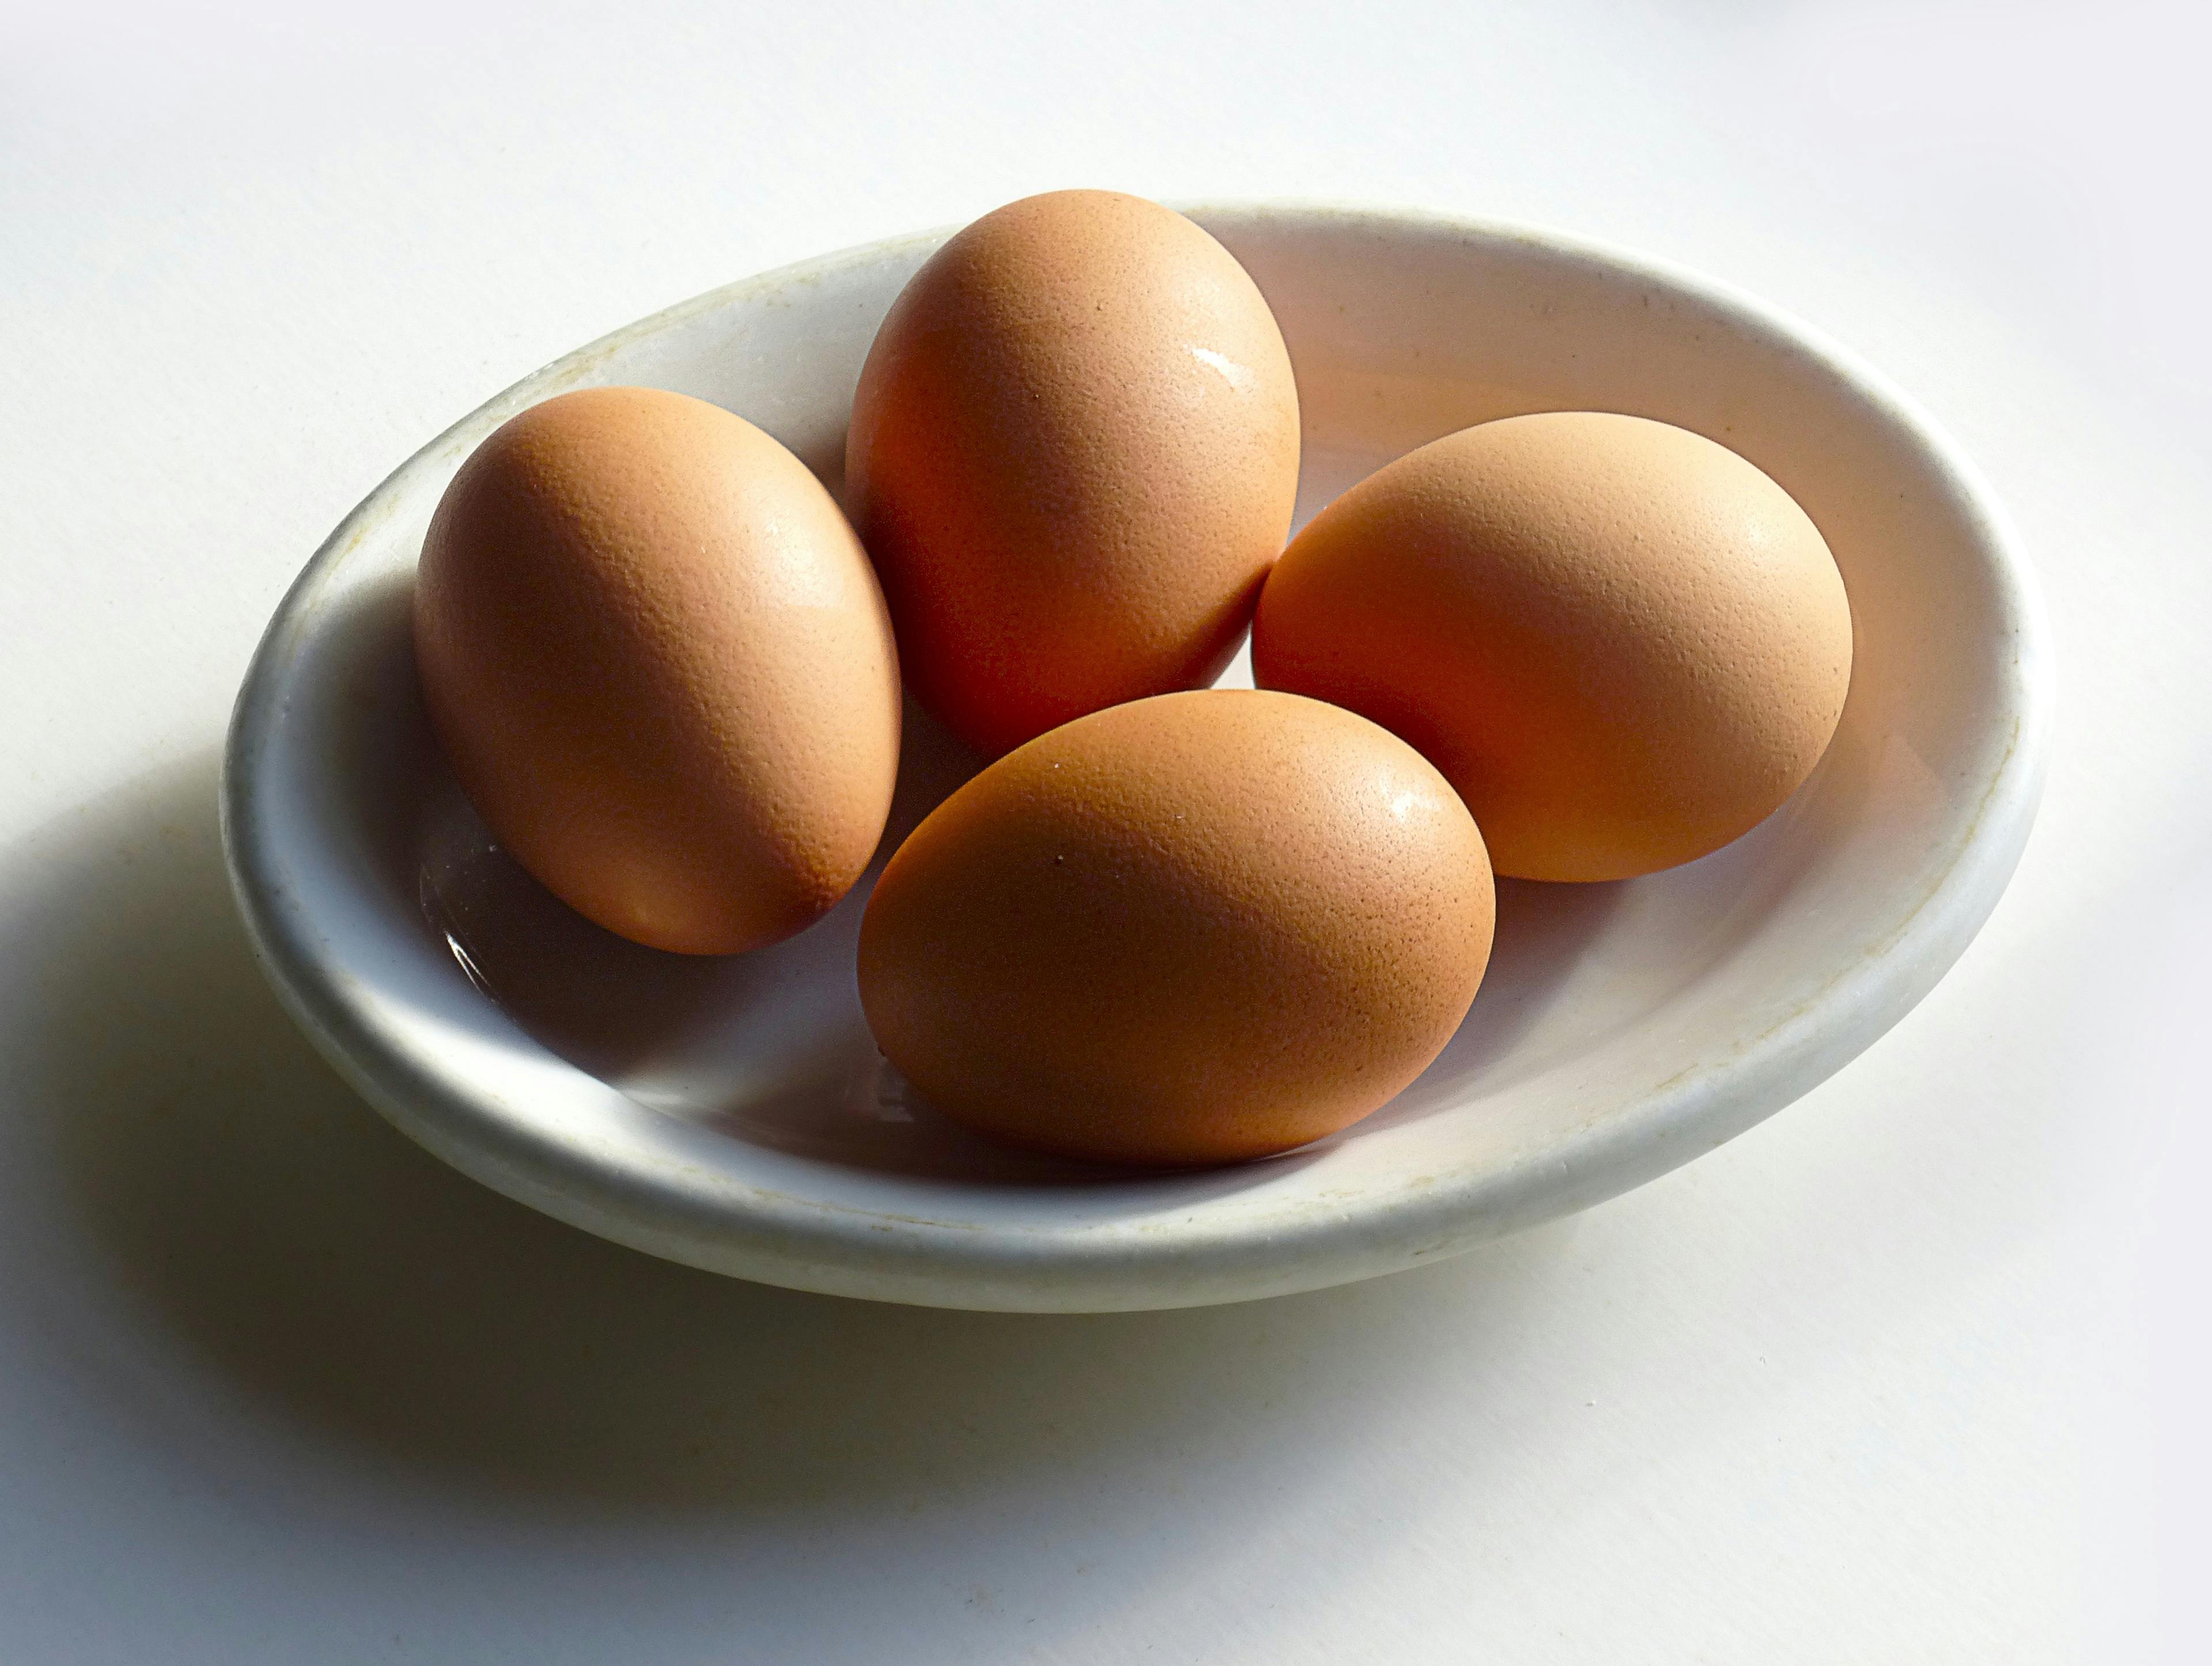 Kostenloses Foto zum Thema: eier, essen, lebensmittel